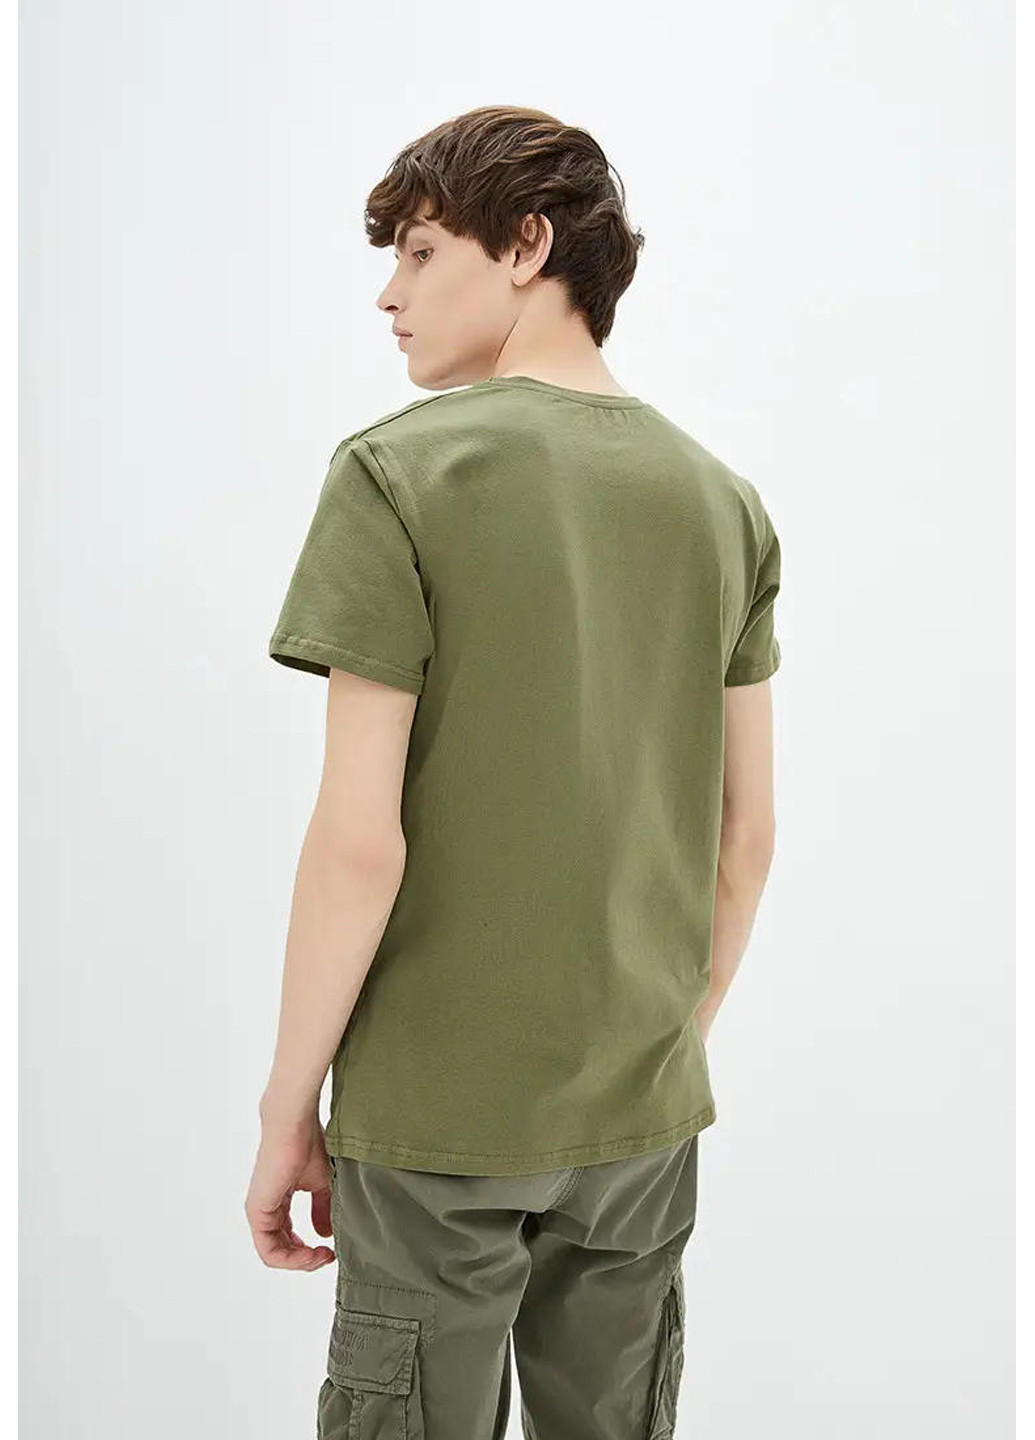 Хаки (оливковая) мужская футболка стрейч Sport Line